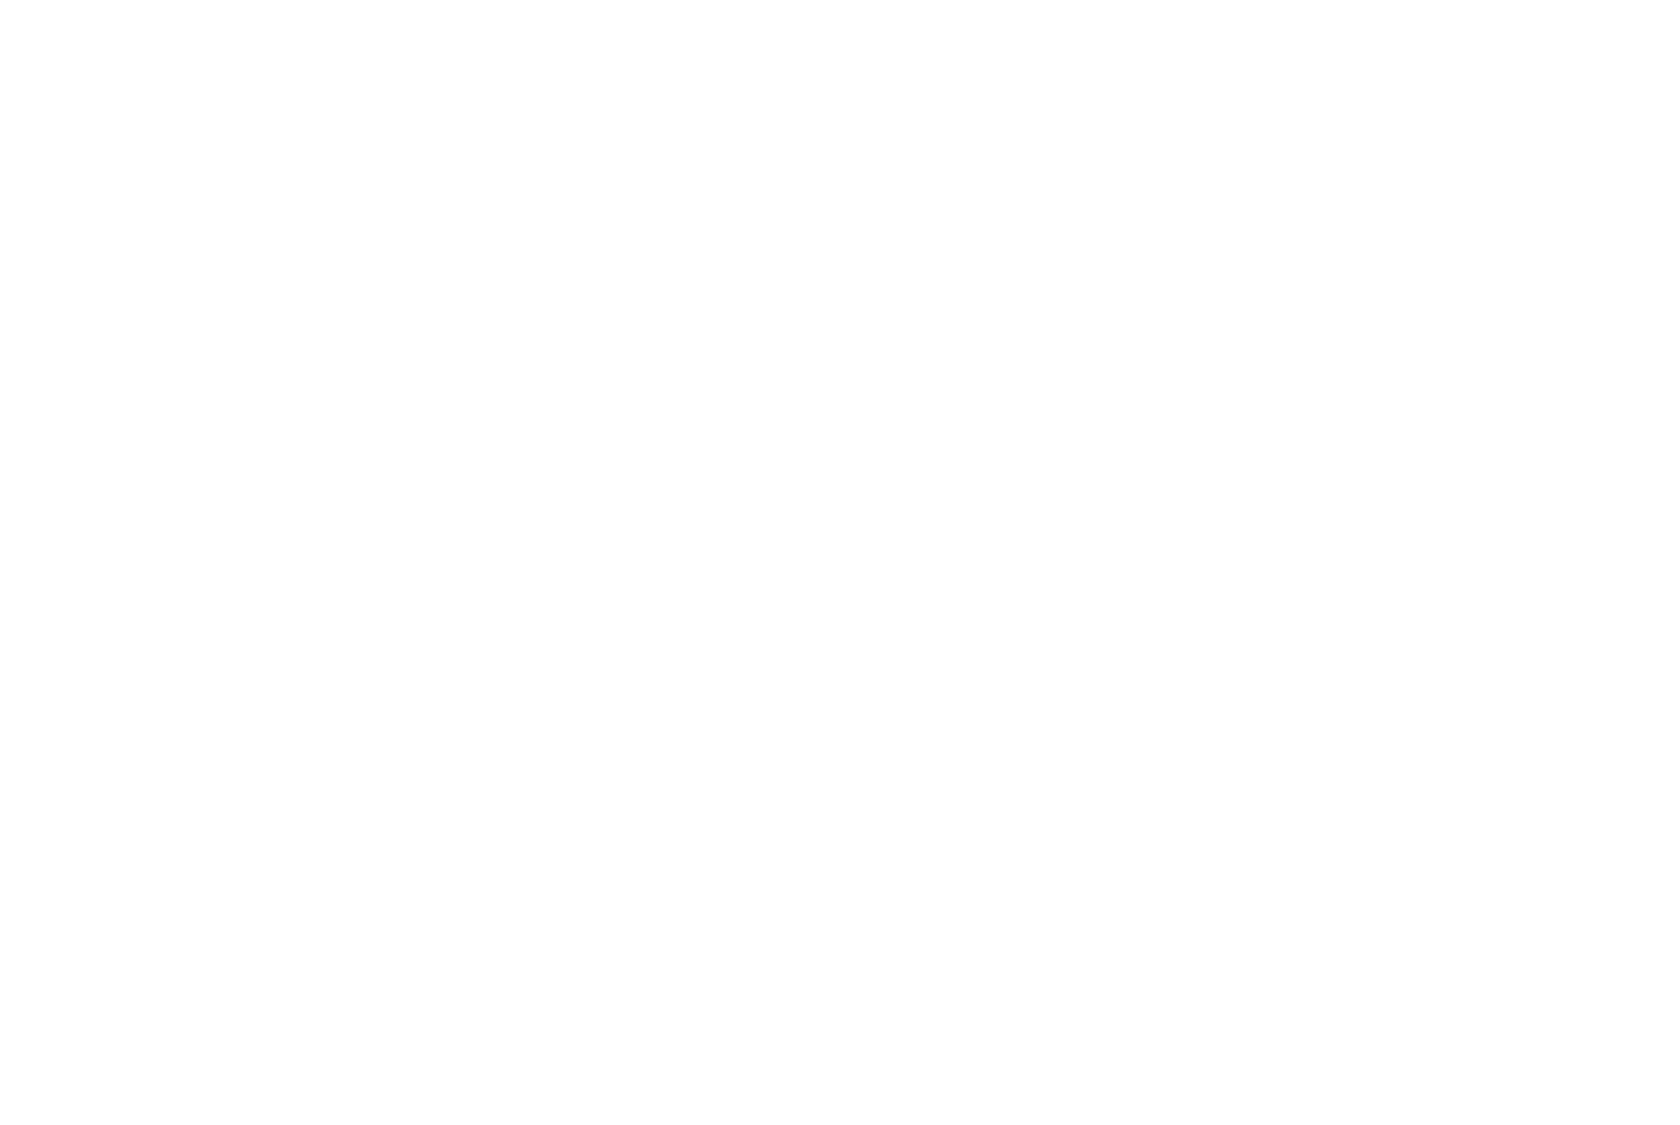 Скриншот сайта Ростелеком с новым логотипом. Главная страница сайта в новом фирменном стиле